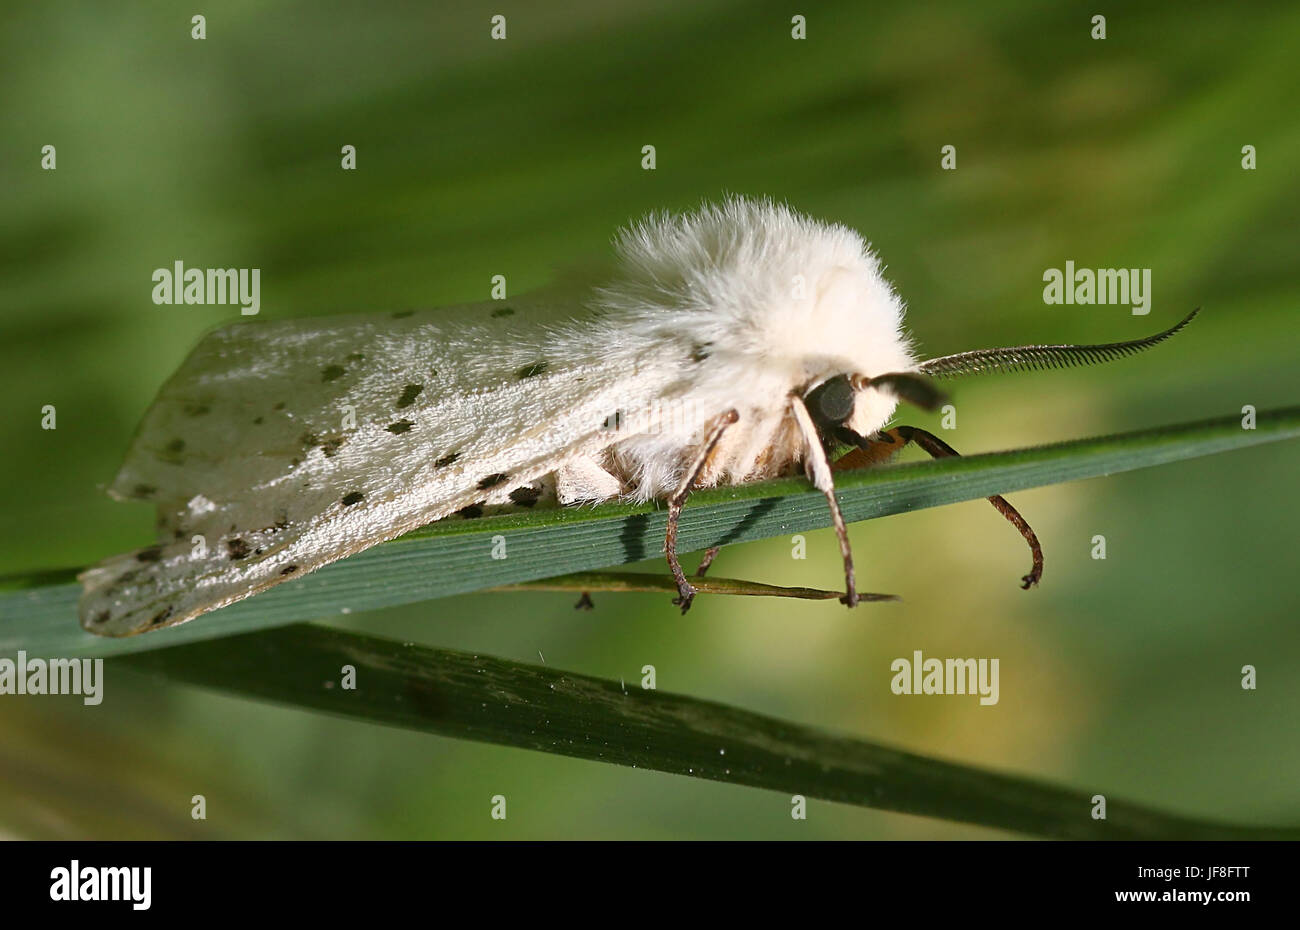 European White ermine moth (Spilosoma lubricipeda) Stock Photo